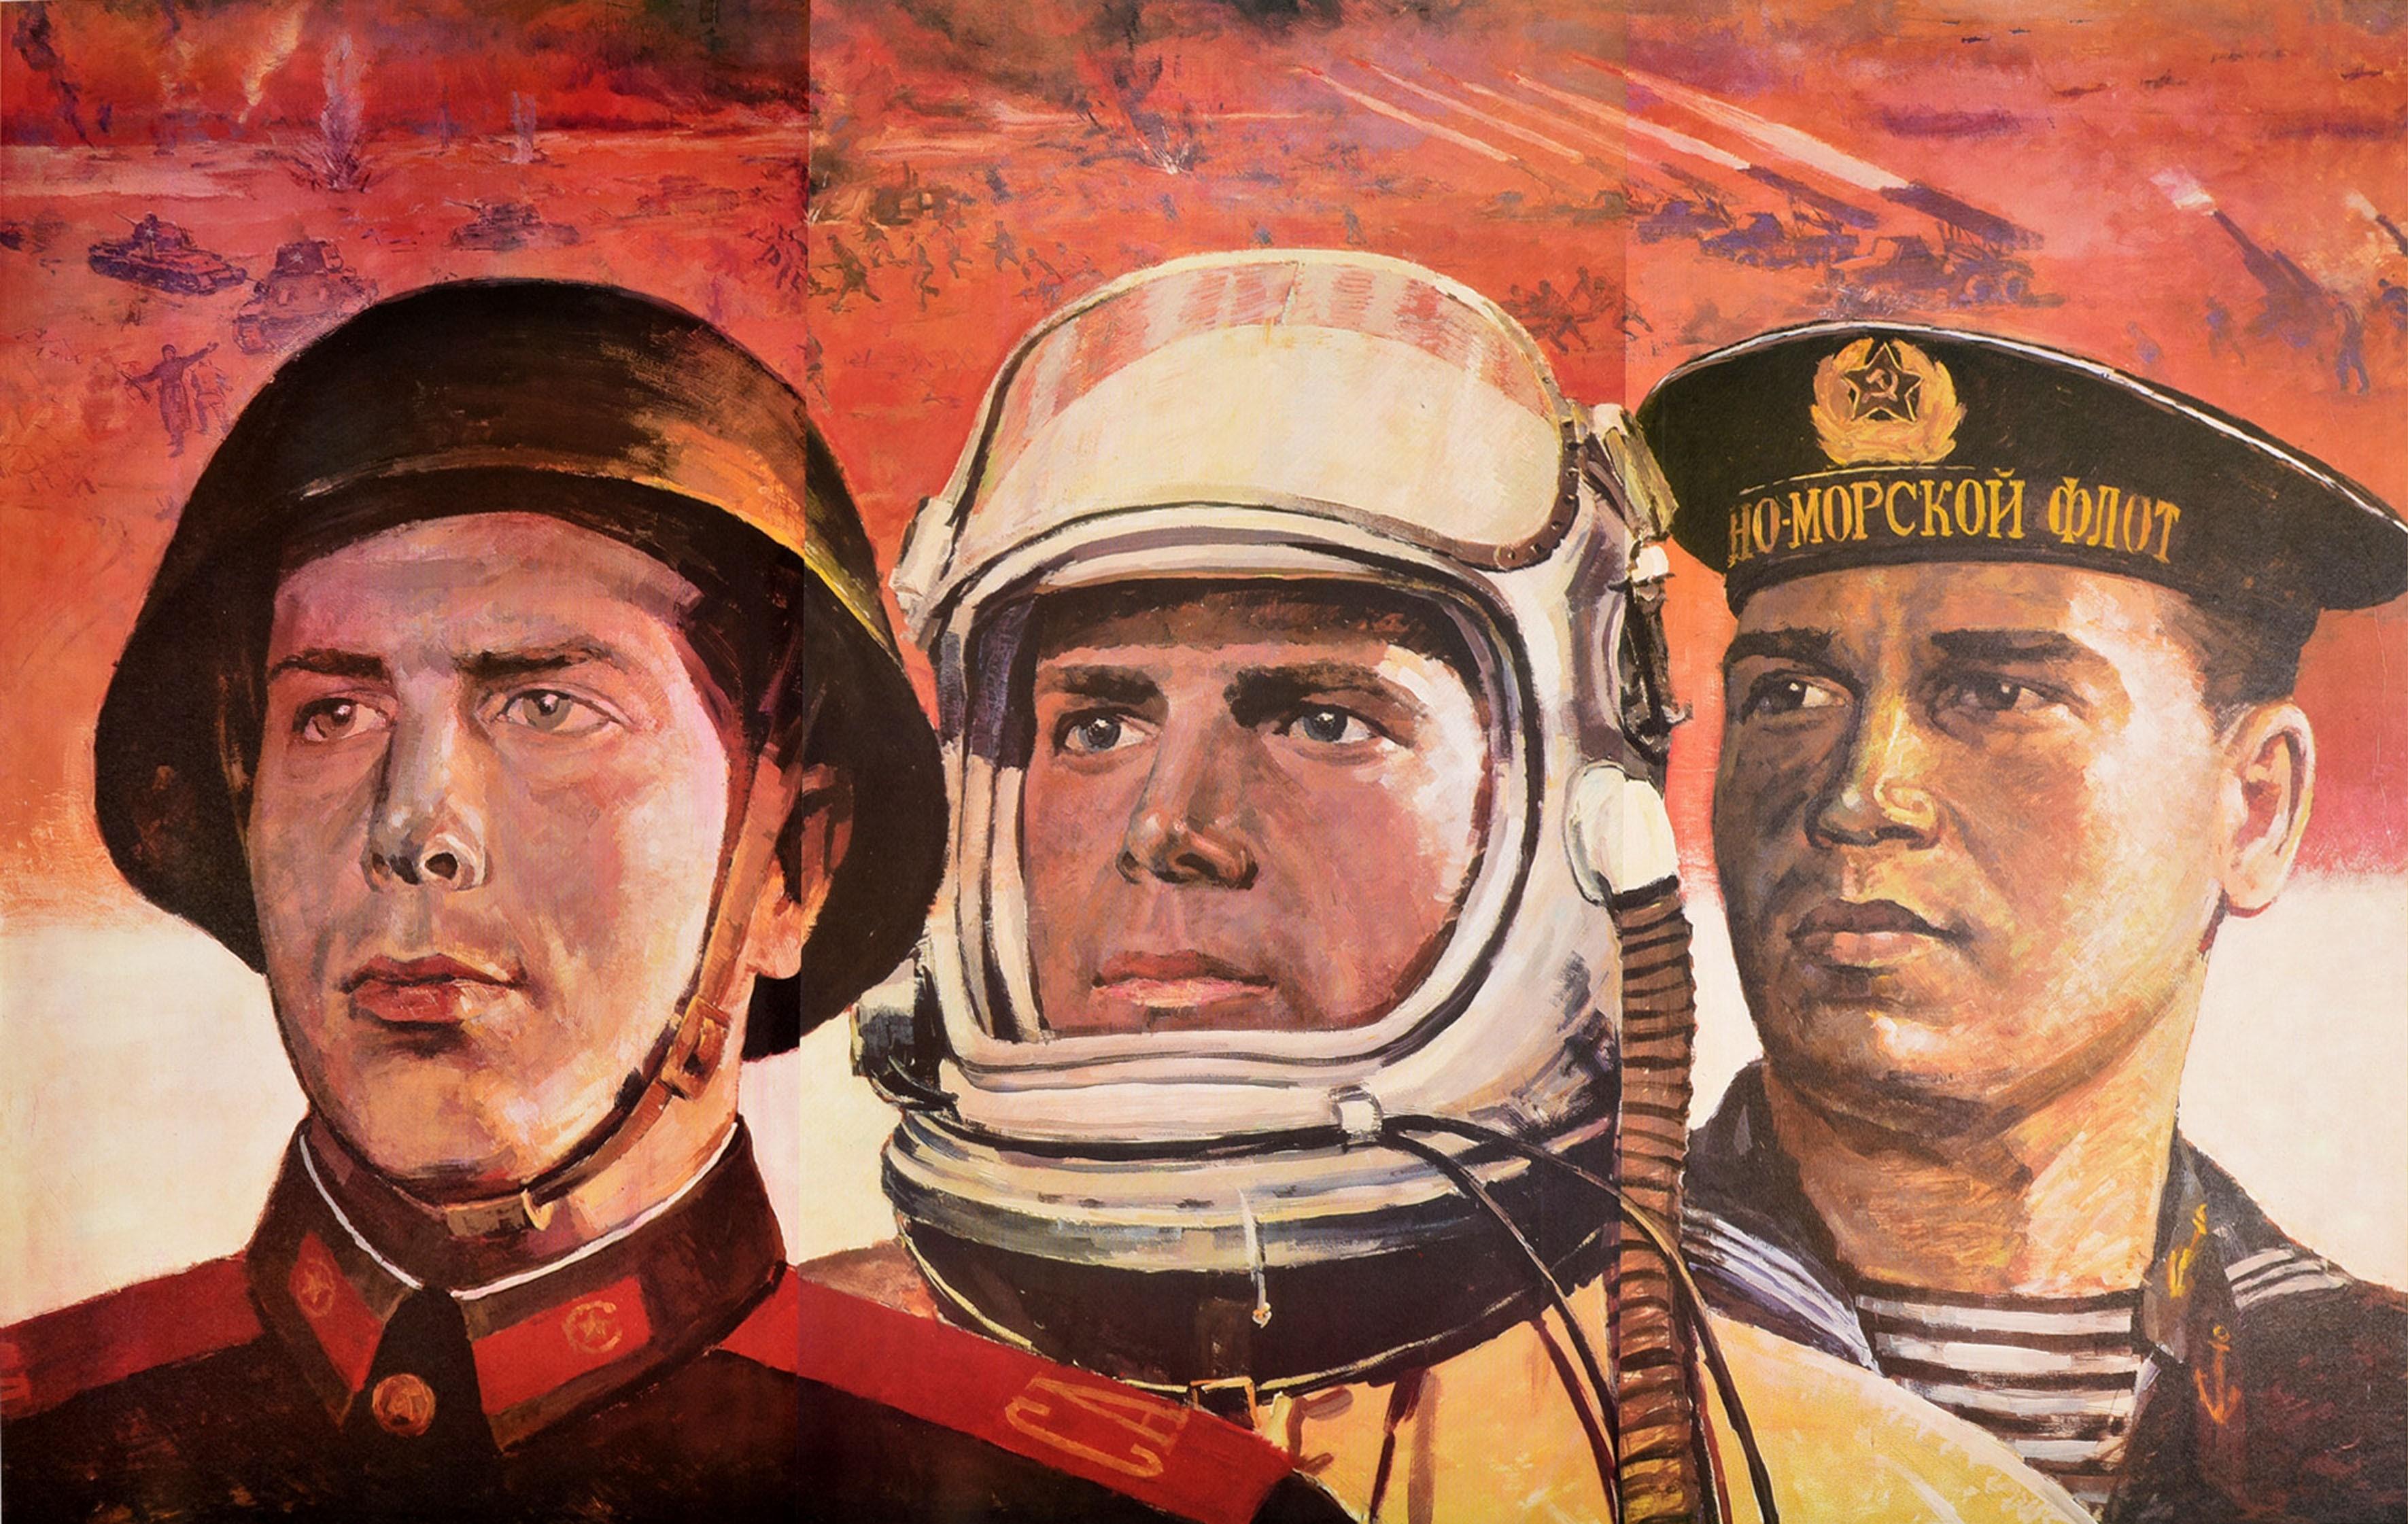 Affiche de propagande soviétique originale de grande taille - Gloire aux forces armées héroïques de l'URSS ! - avec une illustration dynamique d'un soldat, d'un pilote et d'un marin en uniforme de l'Armée rouge, de la Marine et de l'Armée de l'air